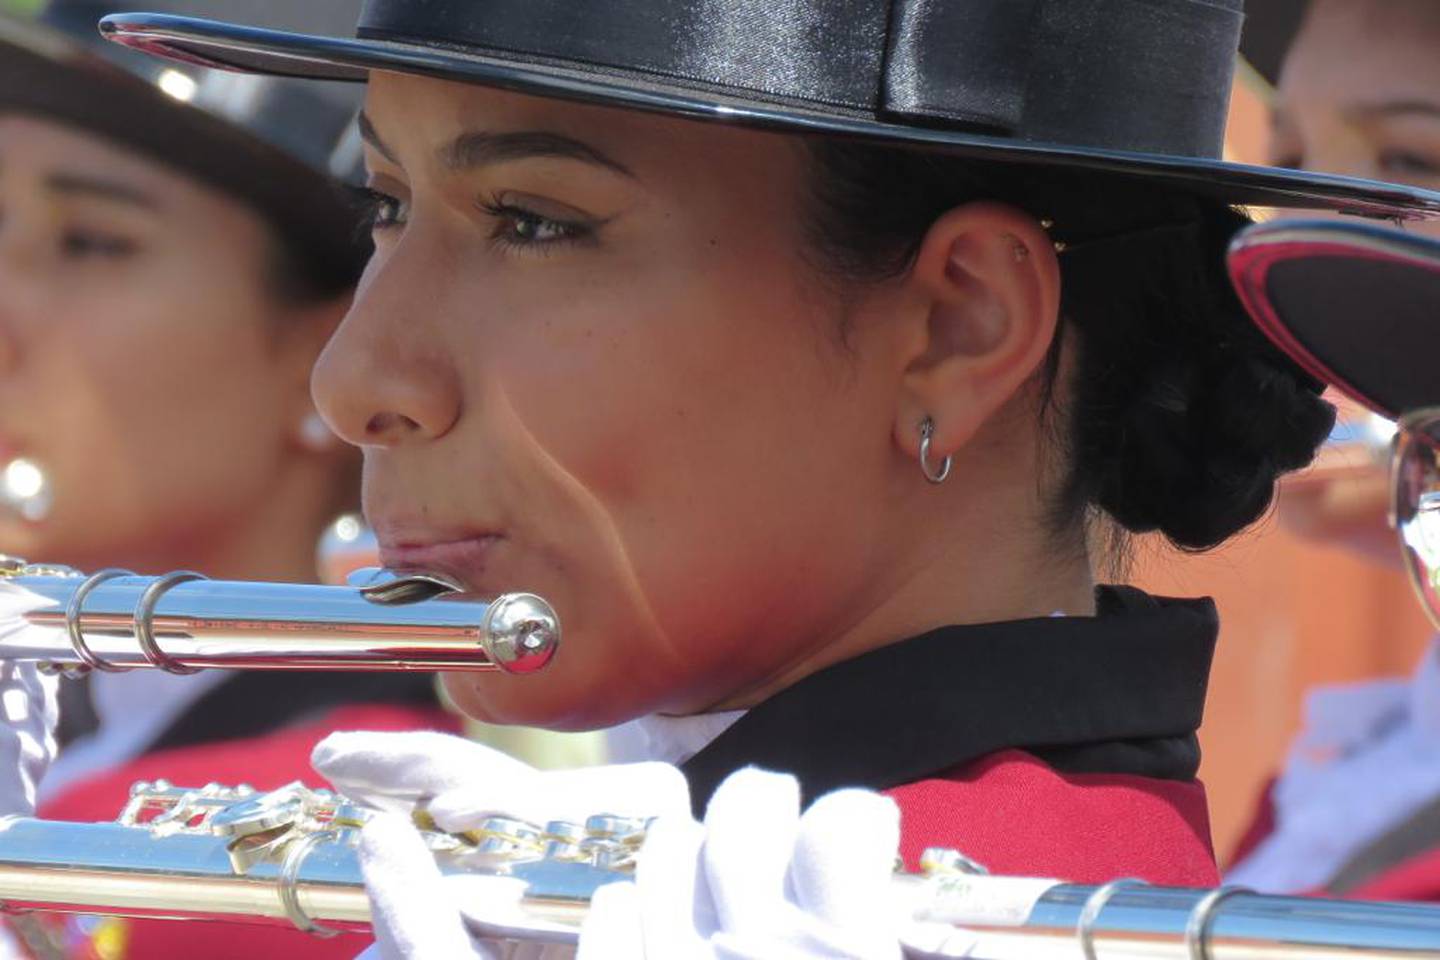 Sofía (19 años) e Indira (22 años) Leal Mora viven en barrio Panamá, en Santa Cruz de Guanacaste. Ambas están en la sección de vientos de la Banda de Zarcero, Sofía toca la flauta transversal e Indira el saxofón alto.